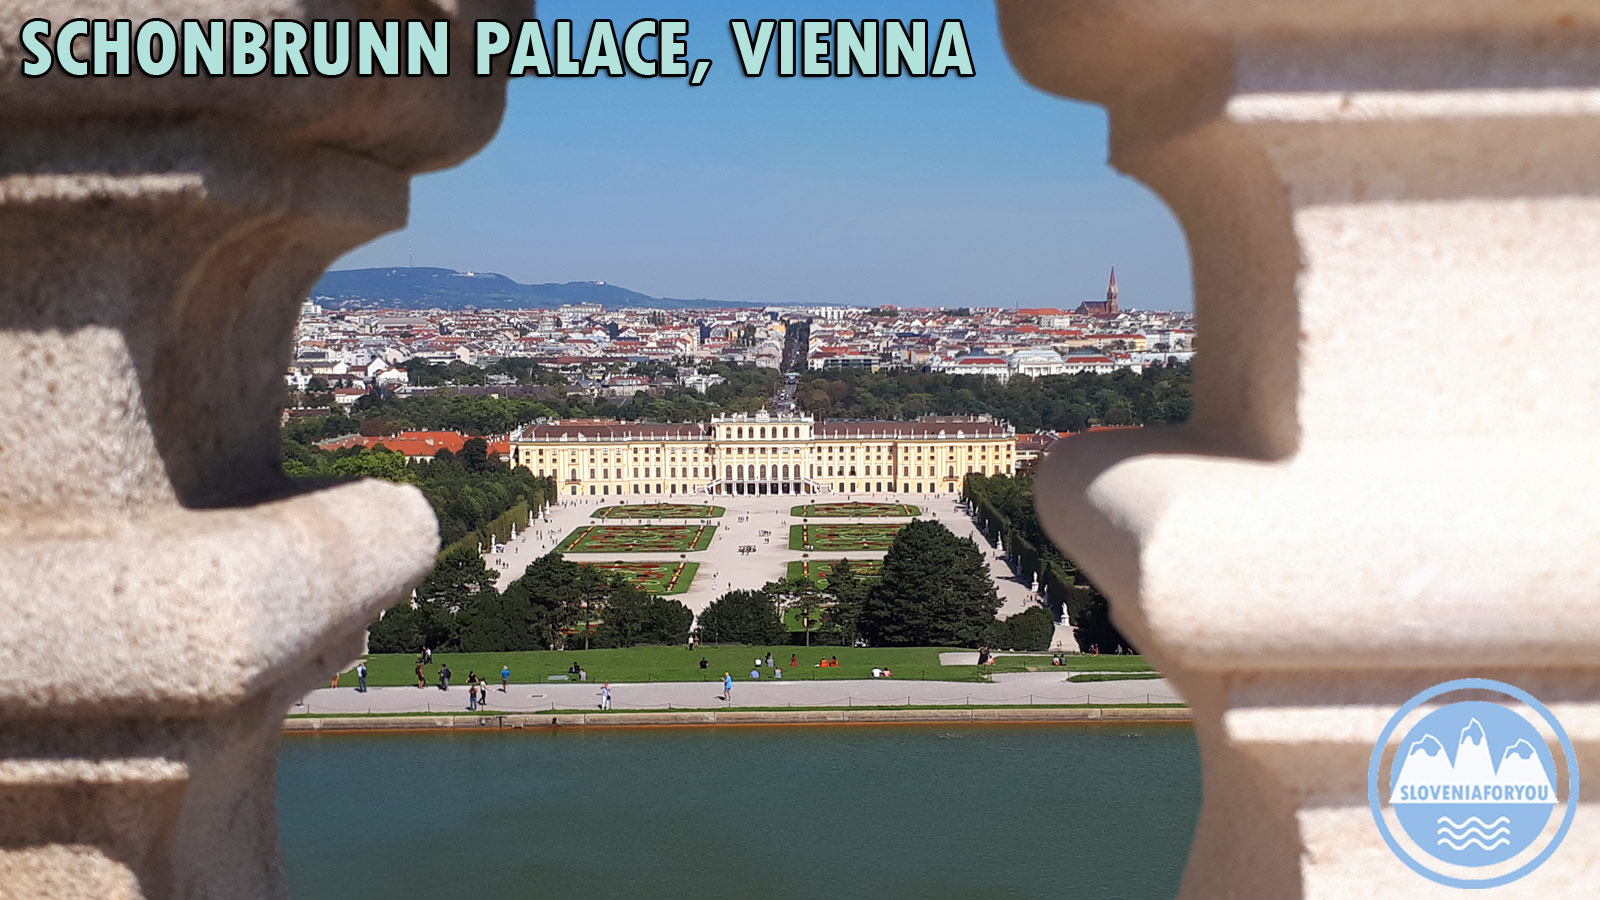 Stunning Schonbrunn Palace, Vienna, Sloveniaforyou